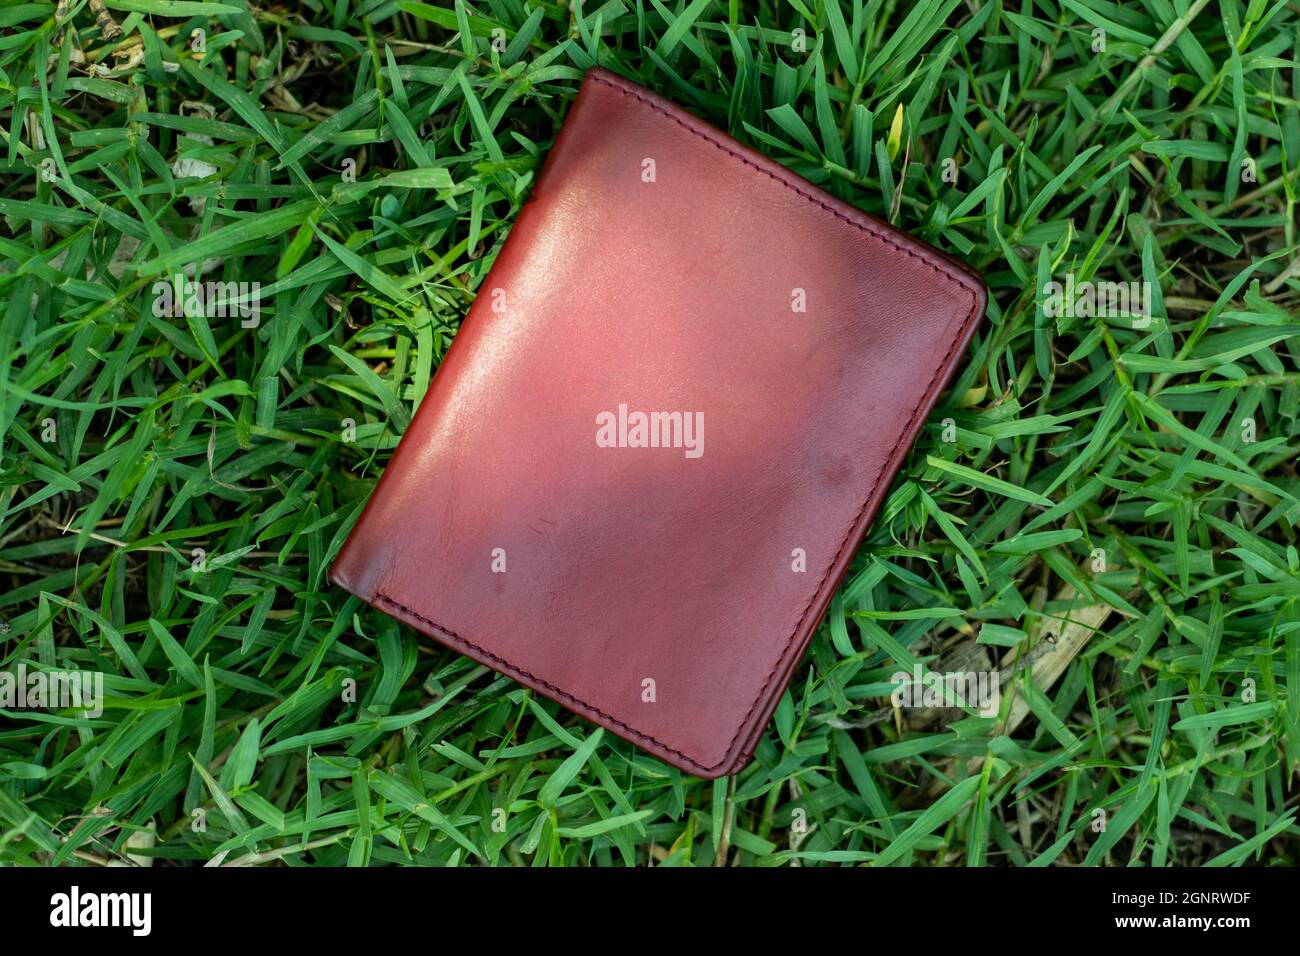 La nature mince et minimaliste d'un porte-monnaie à clip sur l'herbe verte Banque D'Images